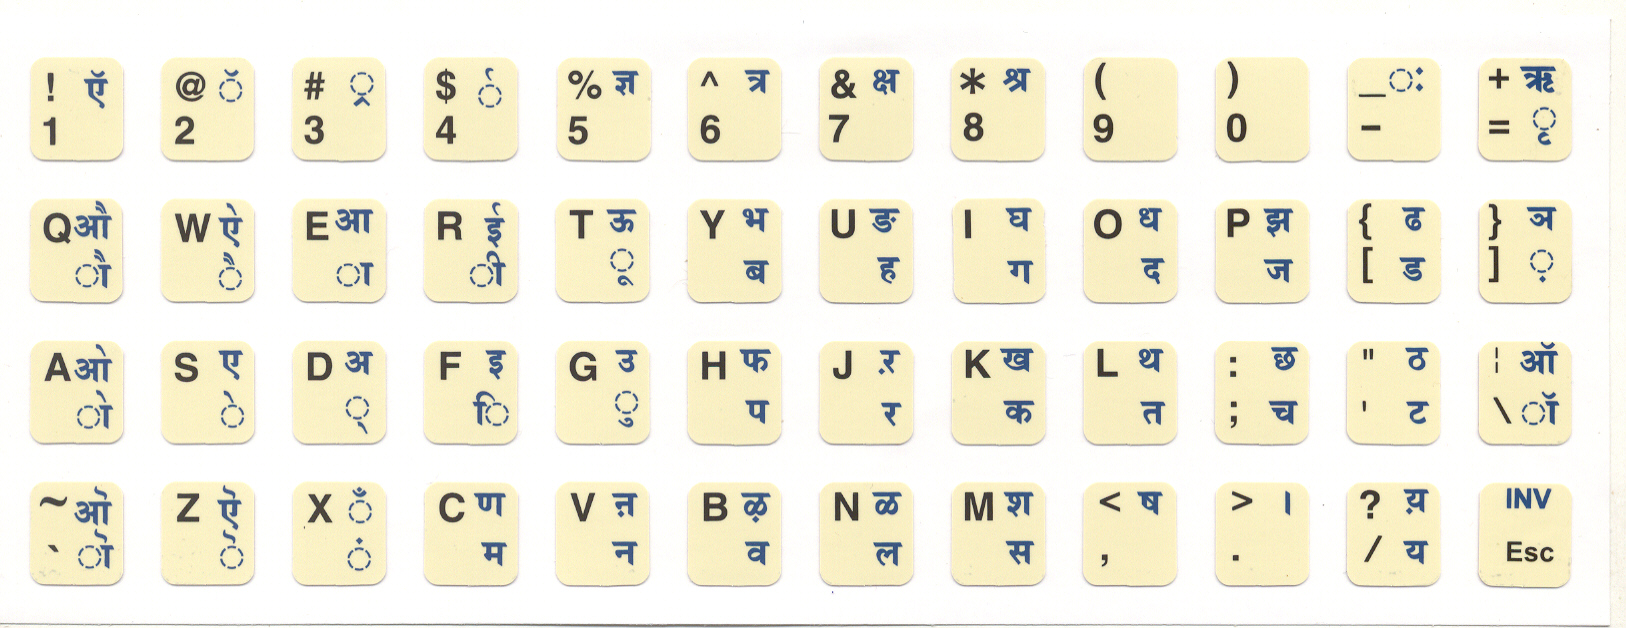 Sanskrit Inscript Keyboard